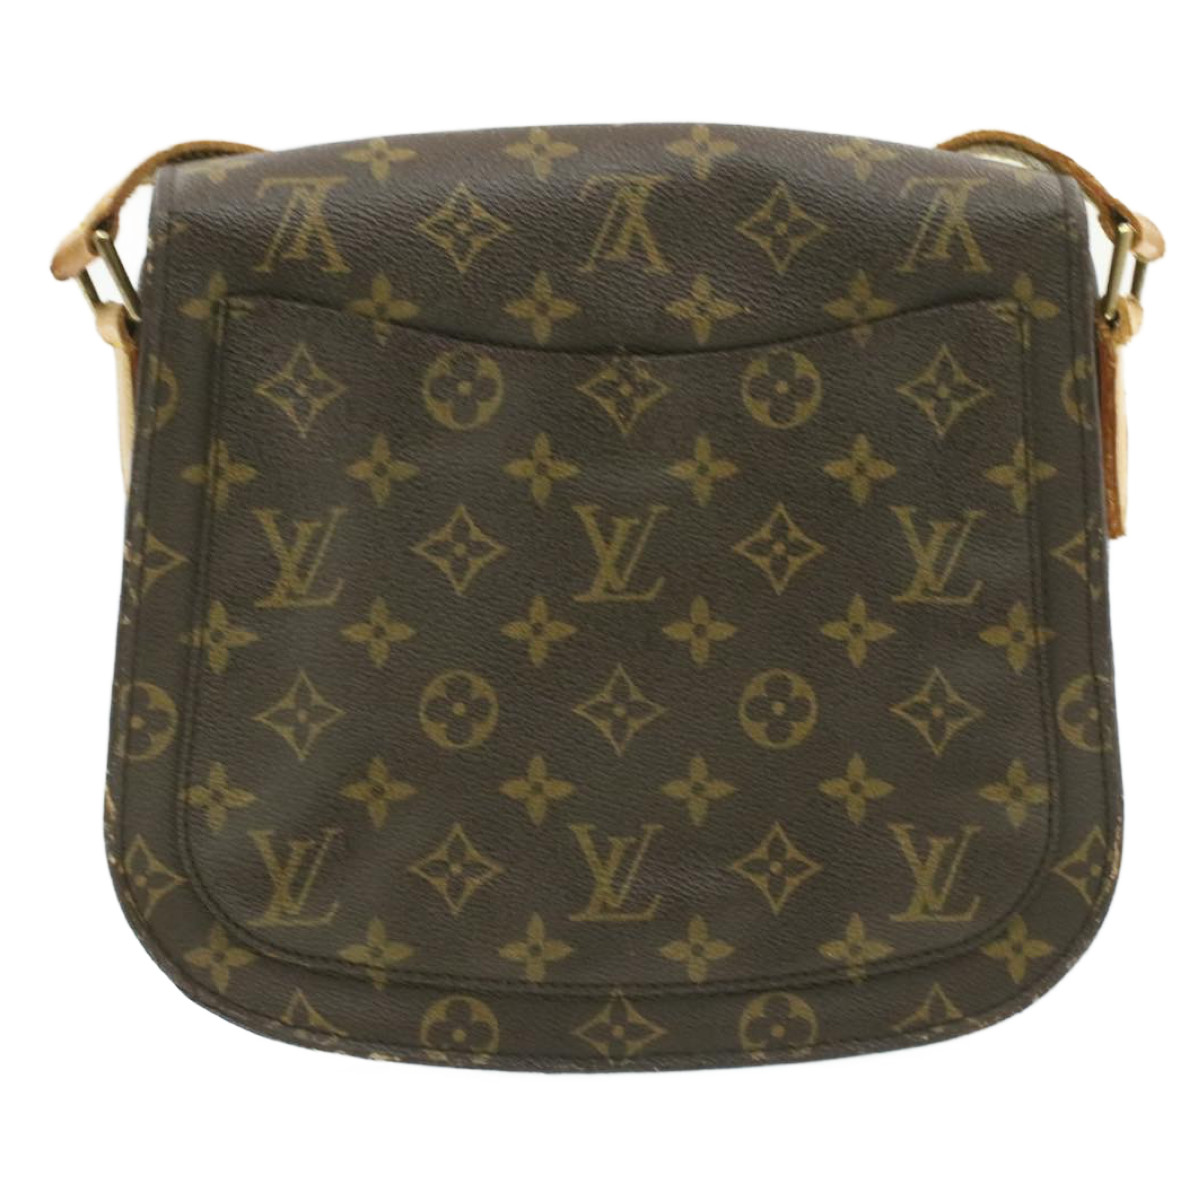 Louis Vuitton, Bags, Authentic Louis Vuitton Crossbody Bag Saint Cloud Gm  Monogram Used Lv Handbag